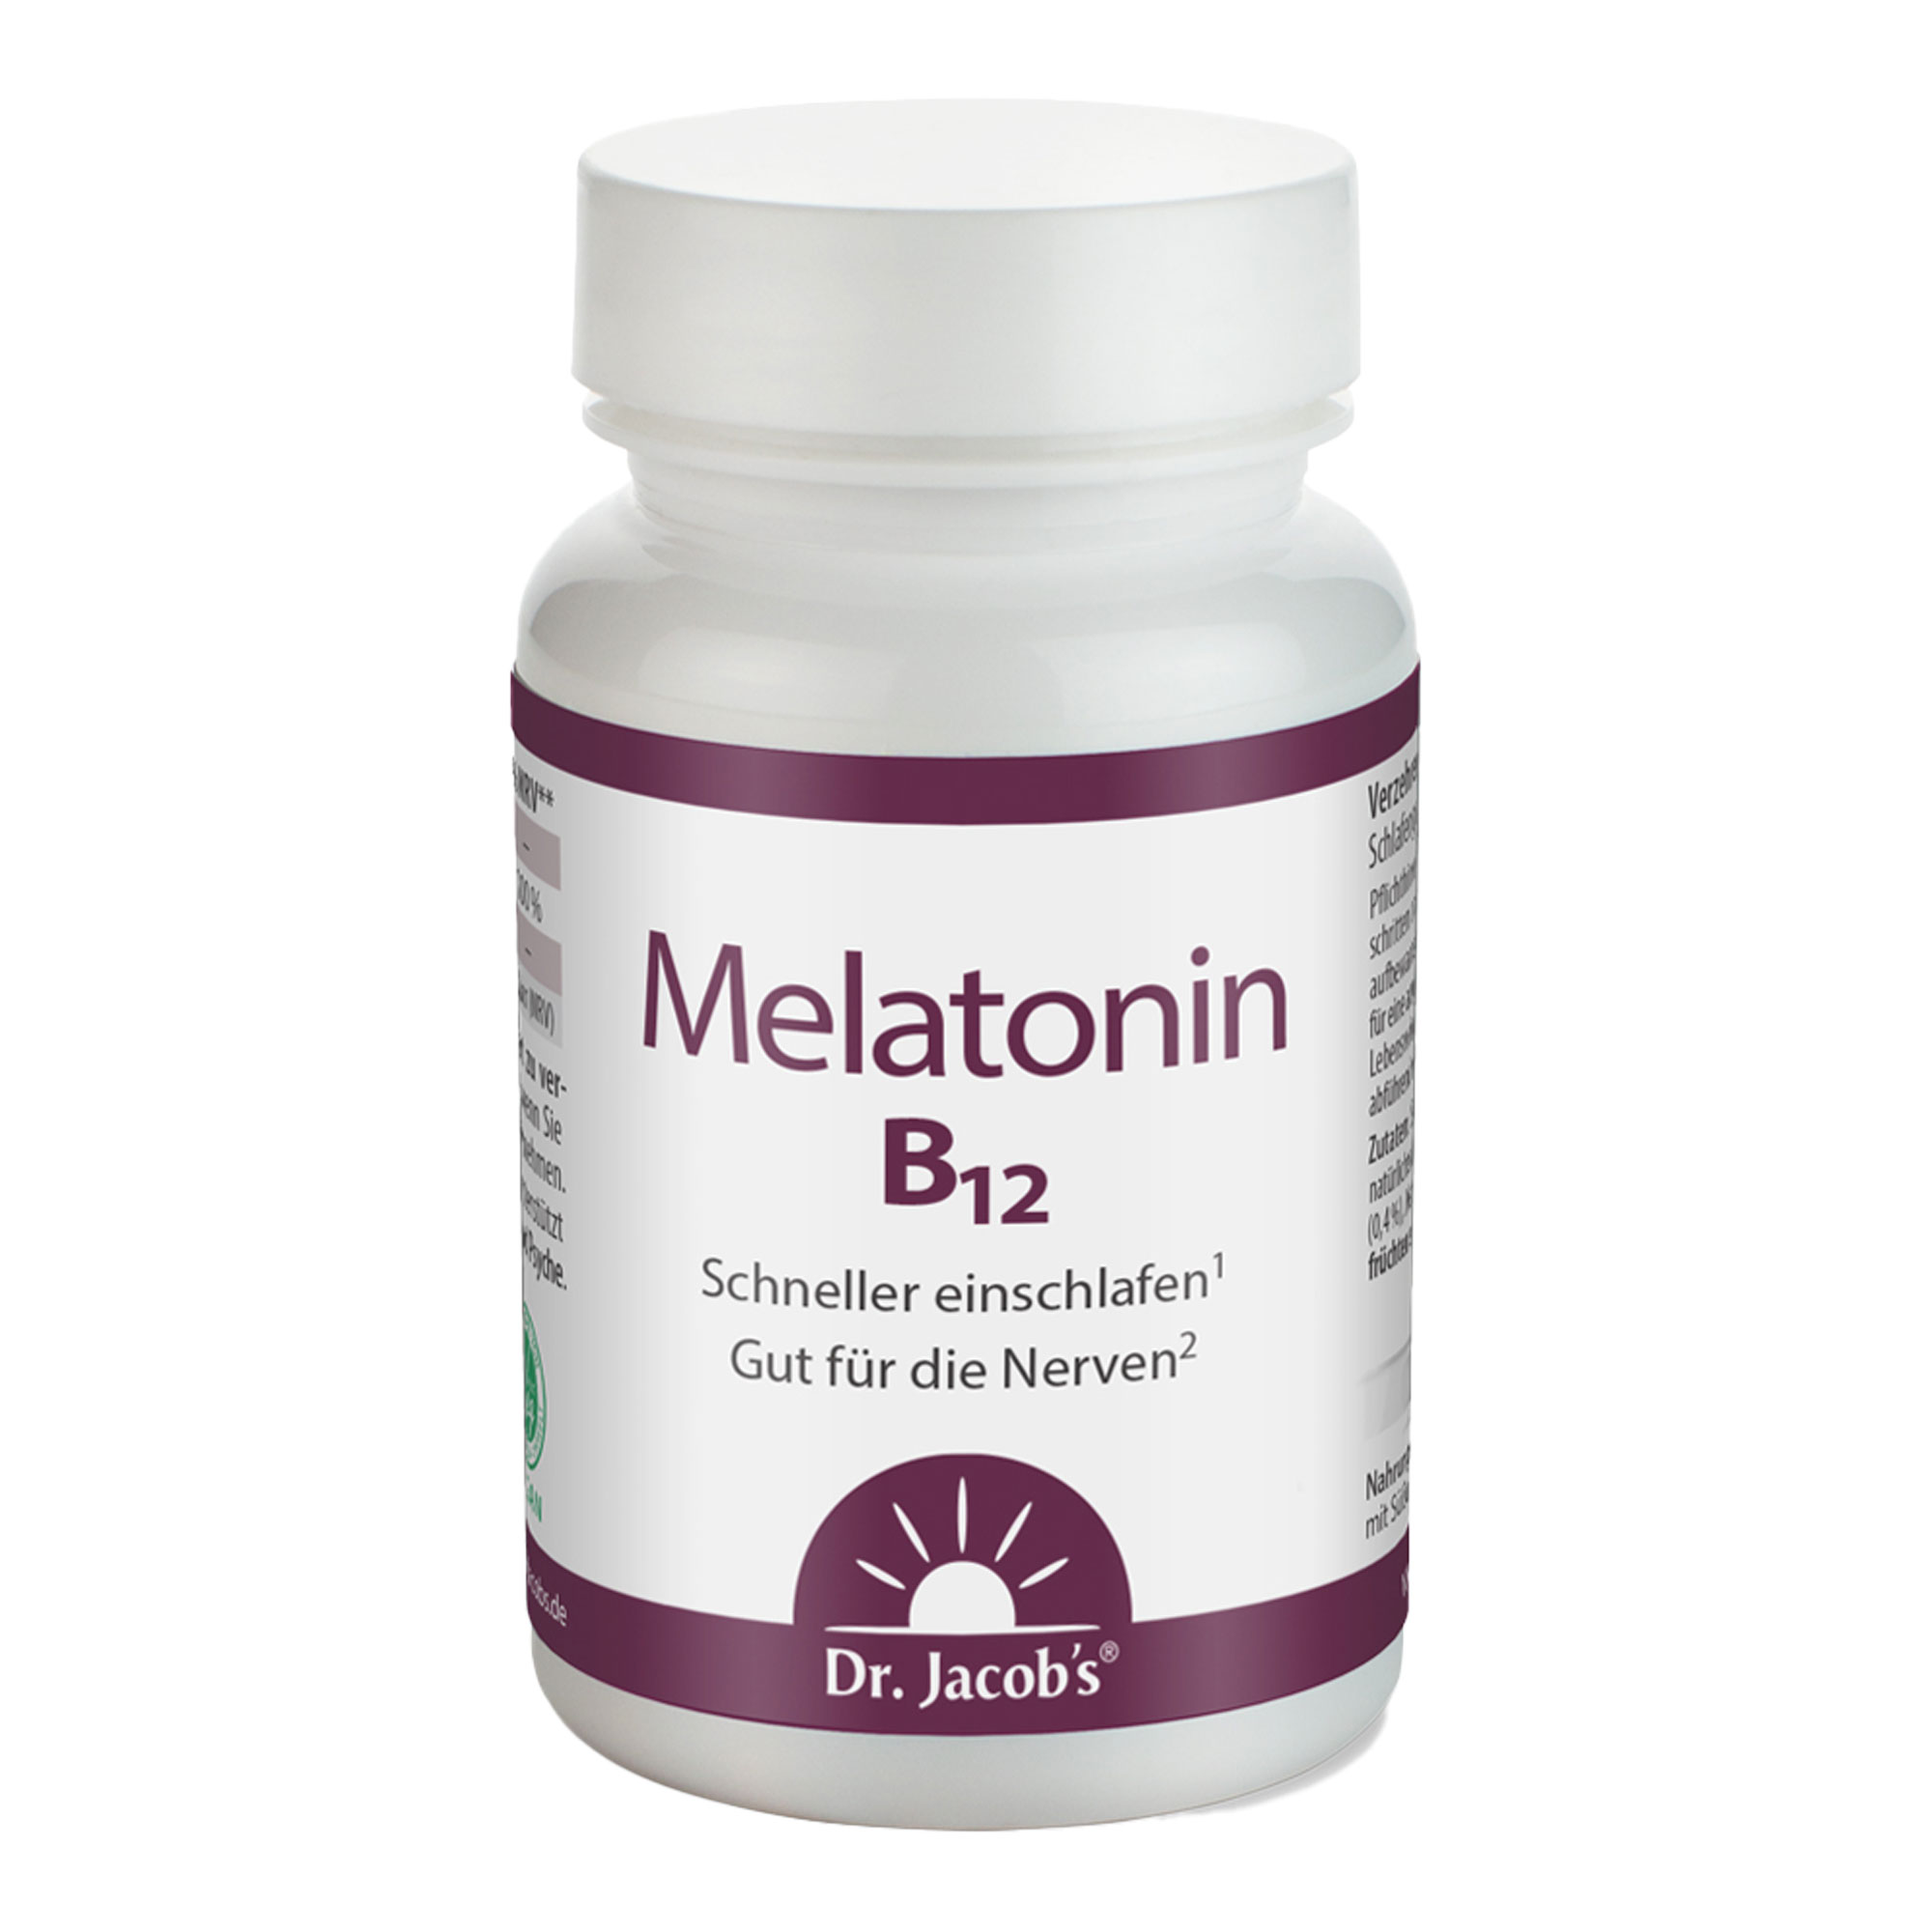 Nahrungsergänzungsmittel mit 1 mg Melatonin und Vitamin B12. Mit Kirschgeschmack.